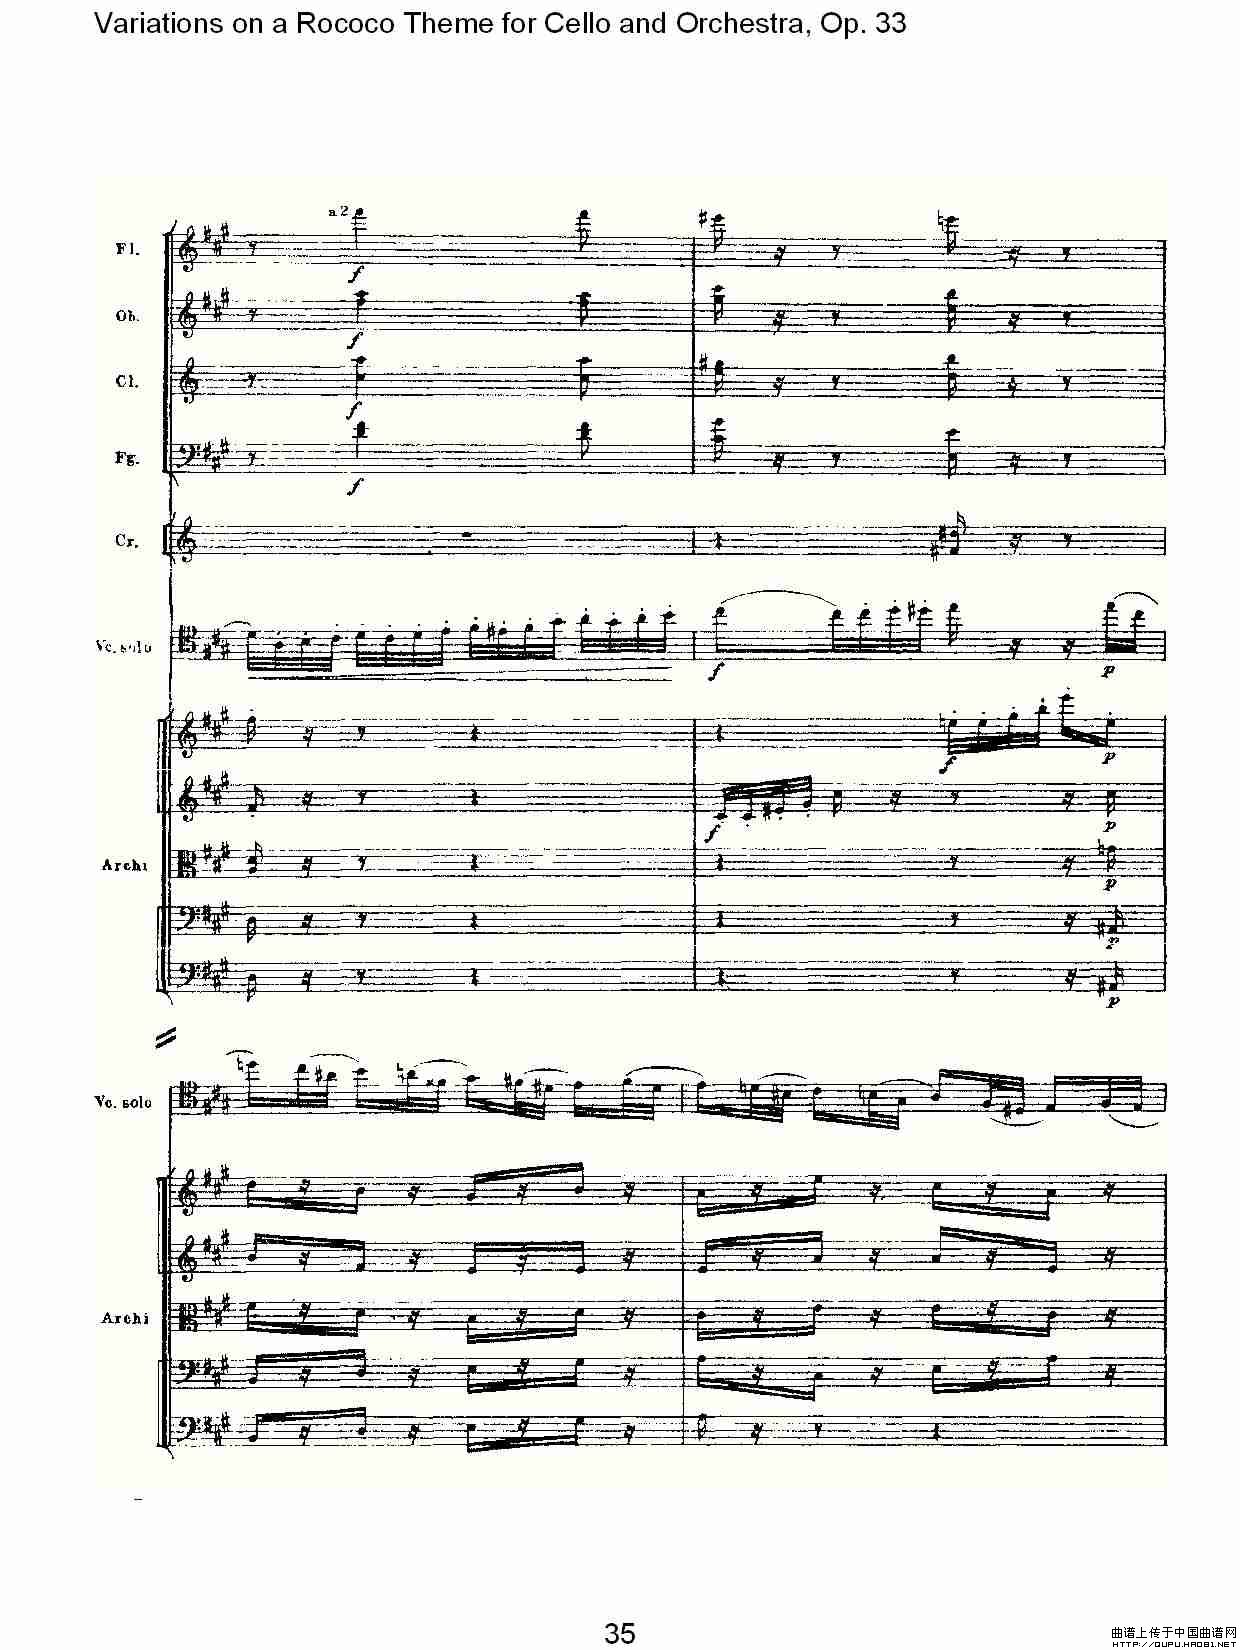 大提琴与管弦乐洛可可主题a小调变奏曲, Op.33（二